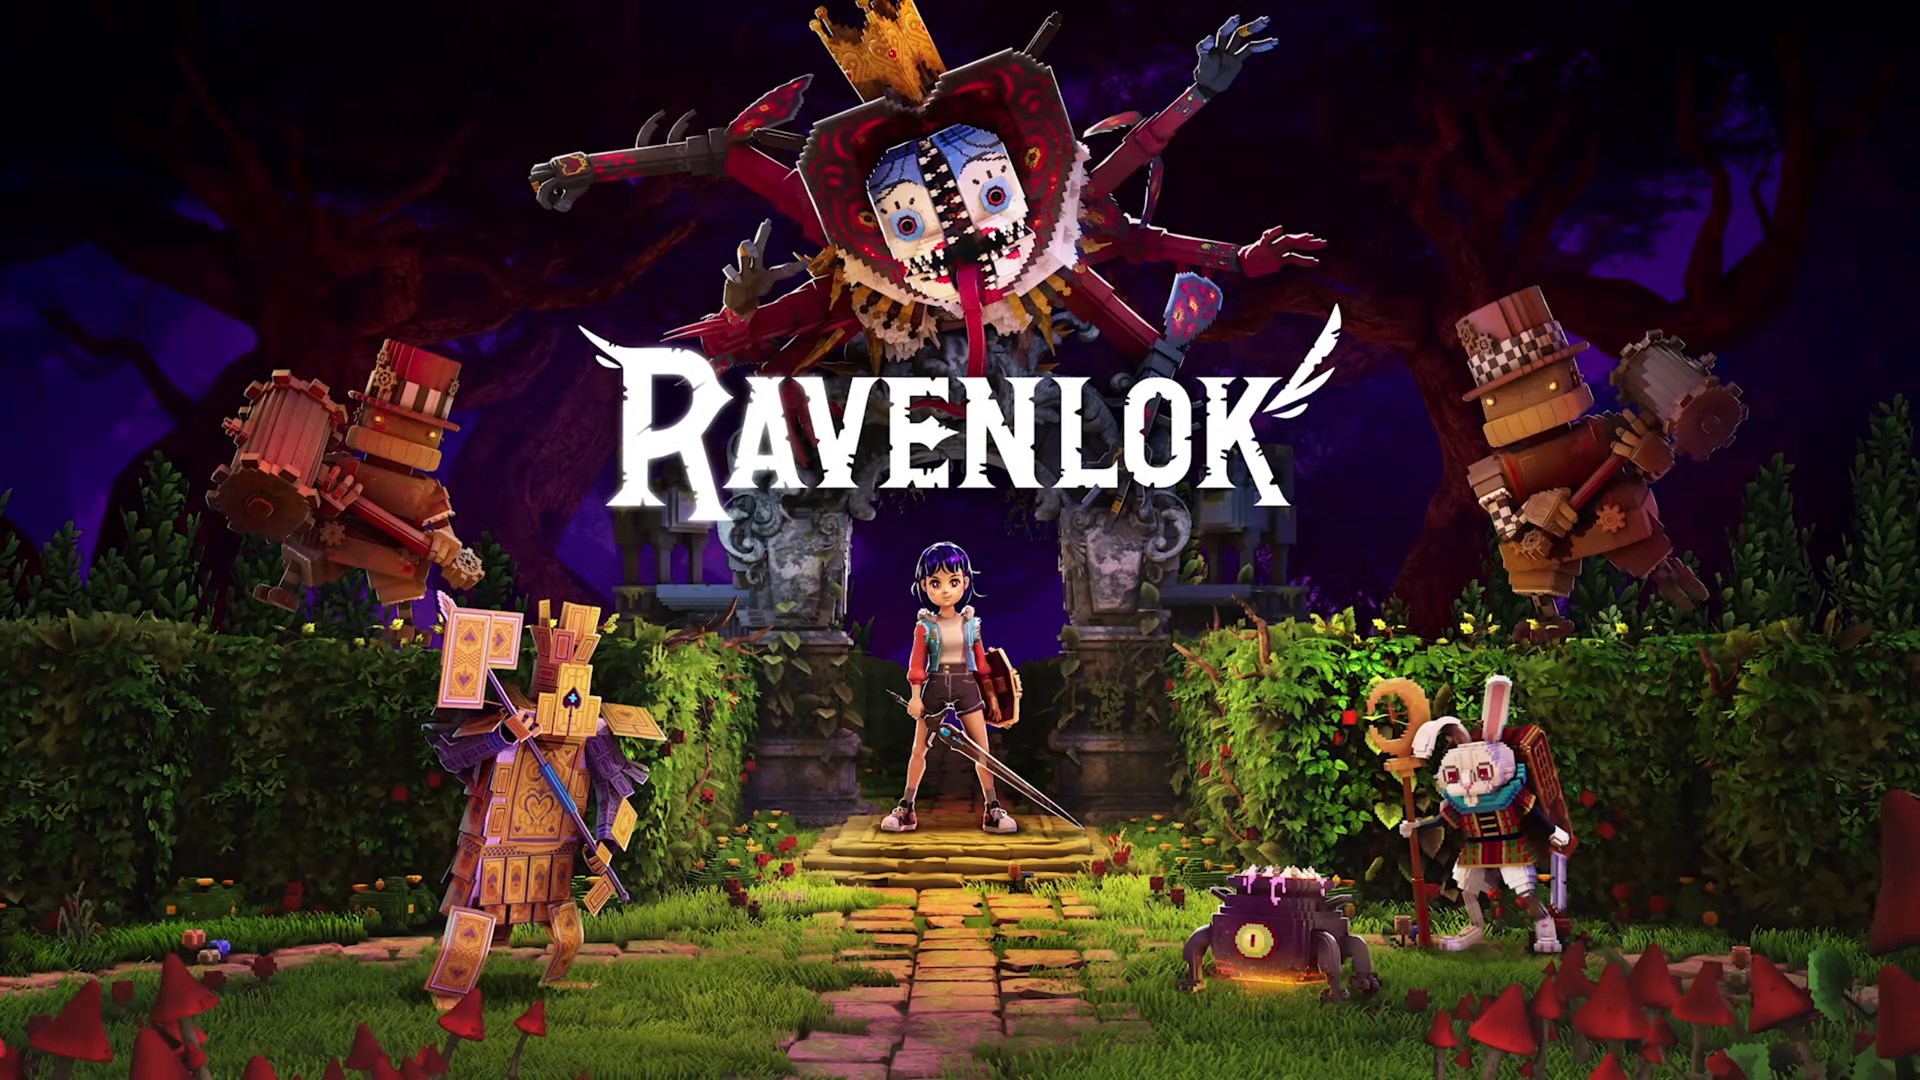 ravenlok был представлен с красочным трейлером на презентации Xbox и Bethesda.